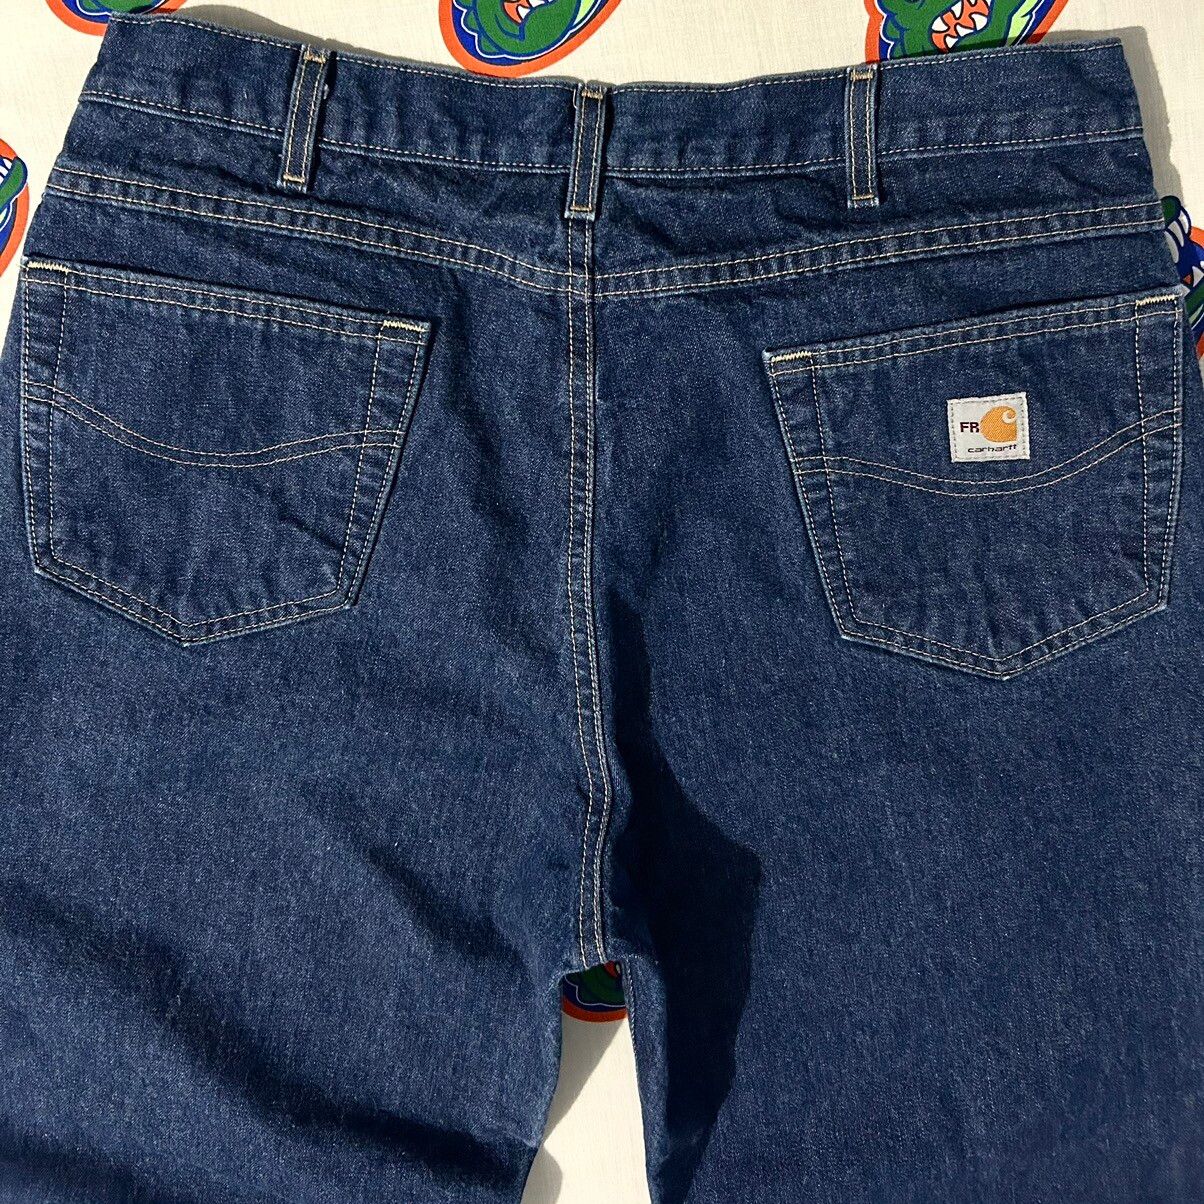 Vintage Mens Vintage Carhartt Fire Resistant Denim Jeans 36 x 30 Size US 36 / EU 52 - 5 Thumbnail